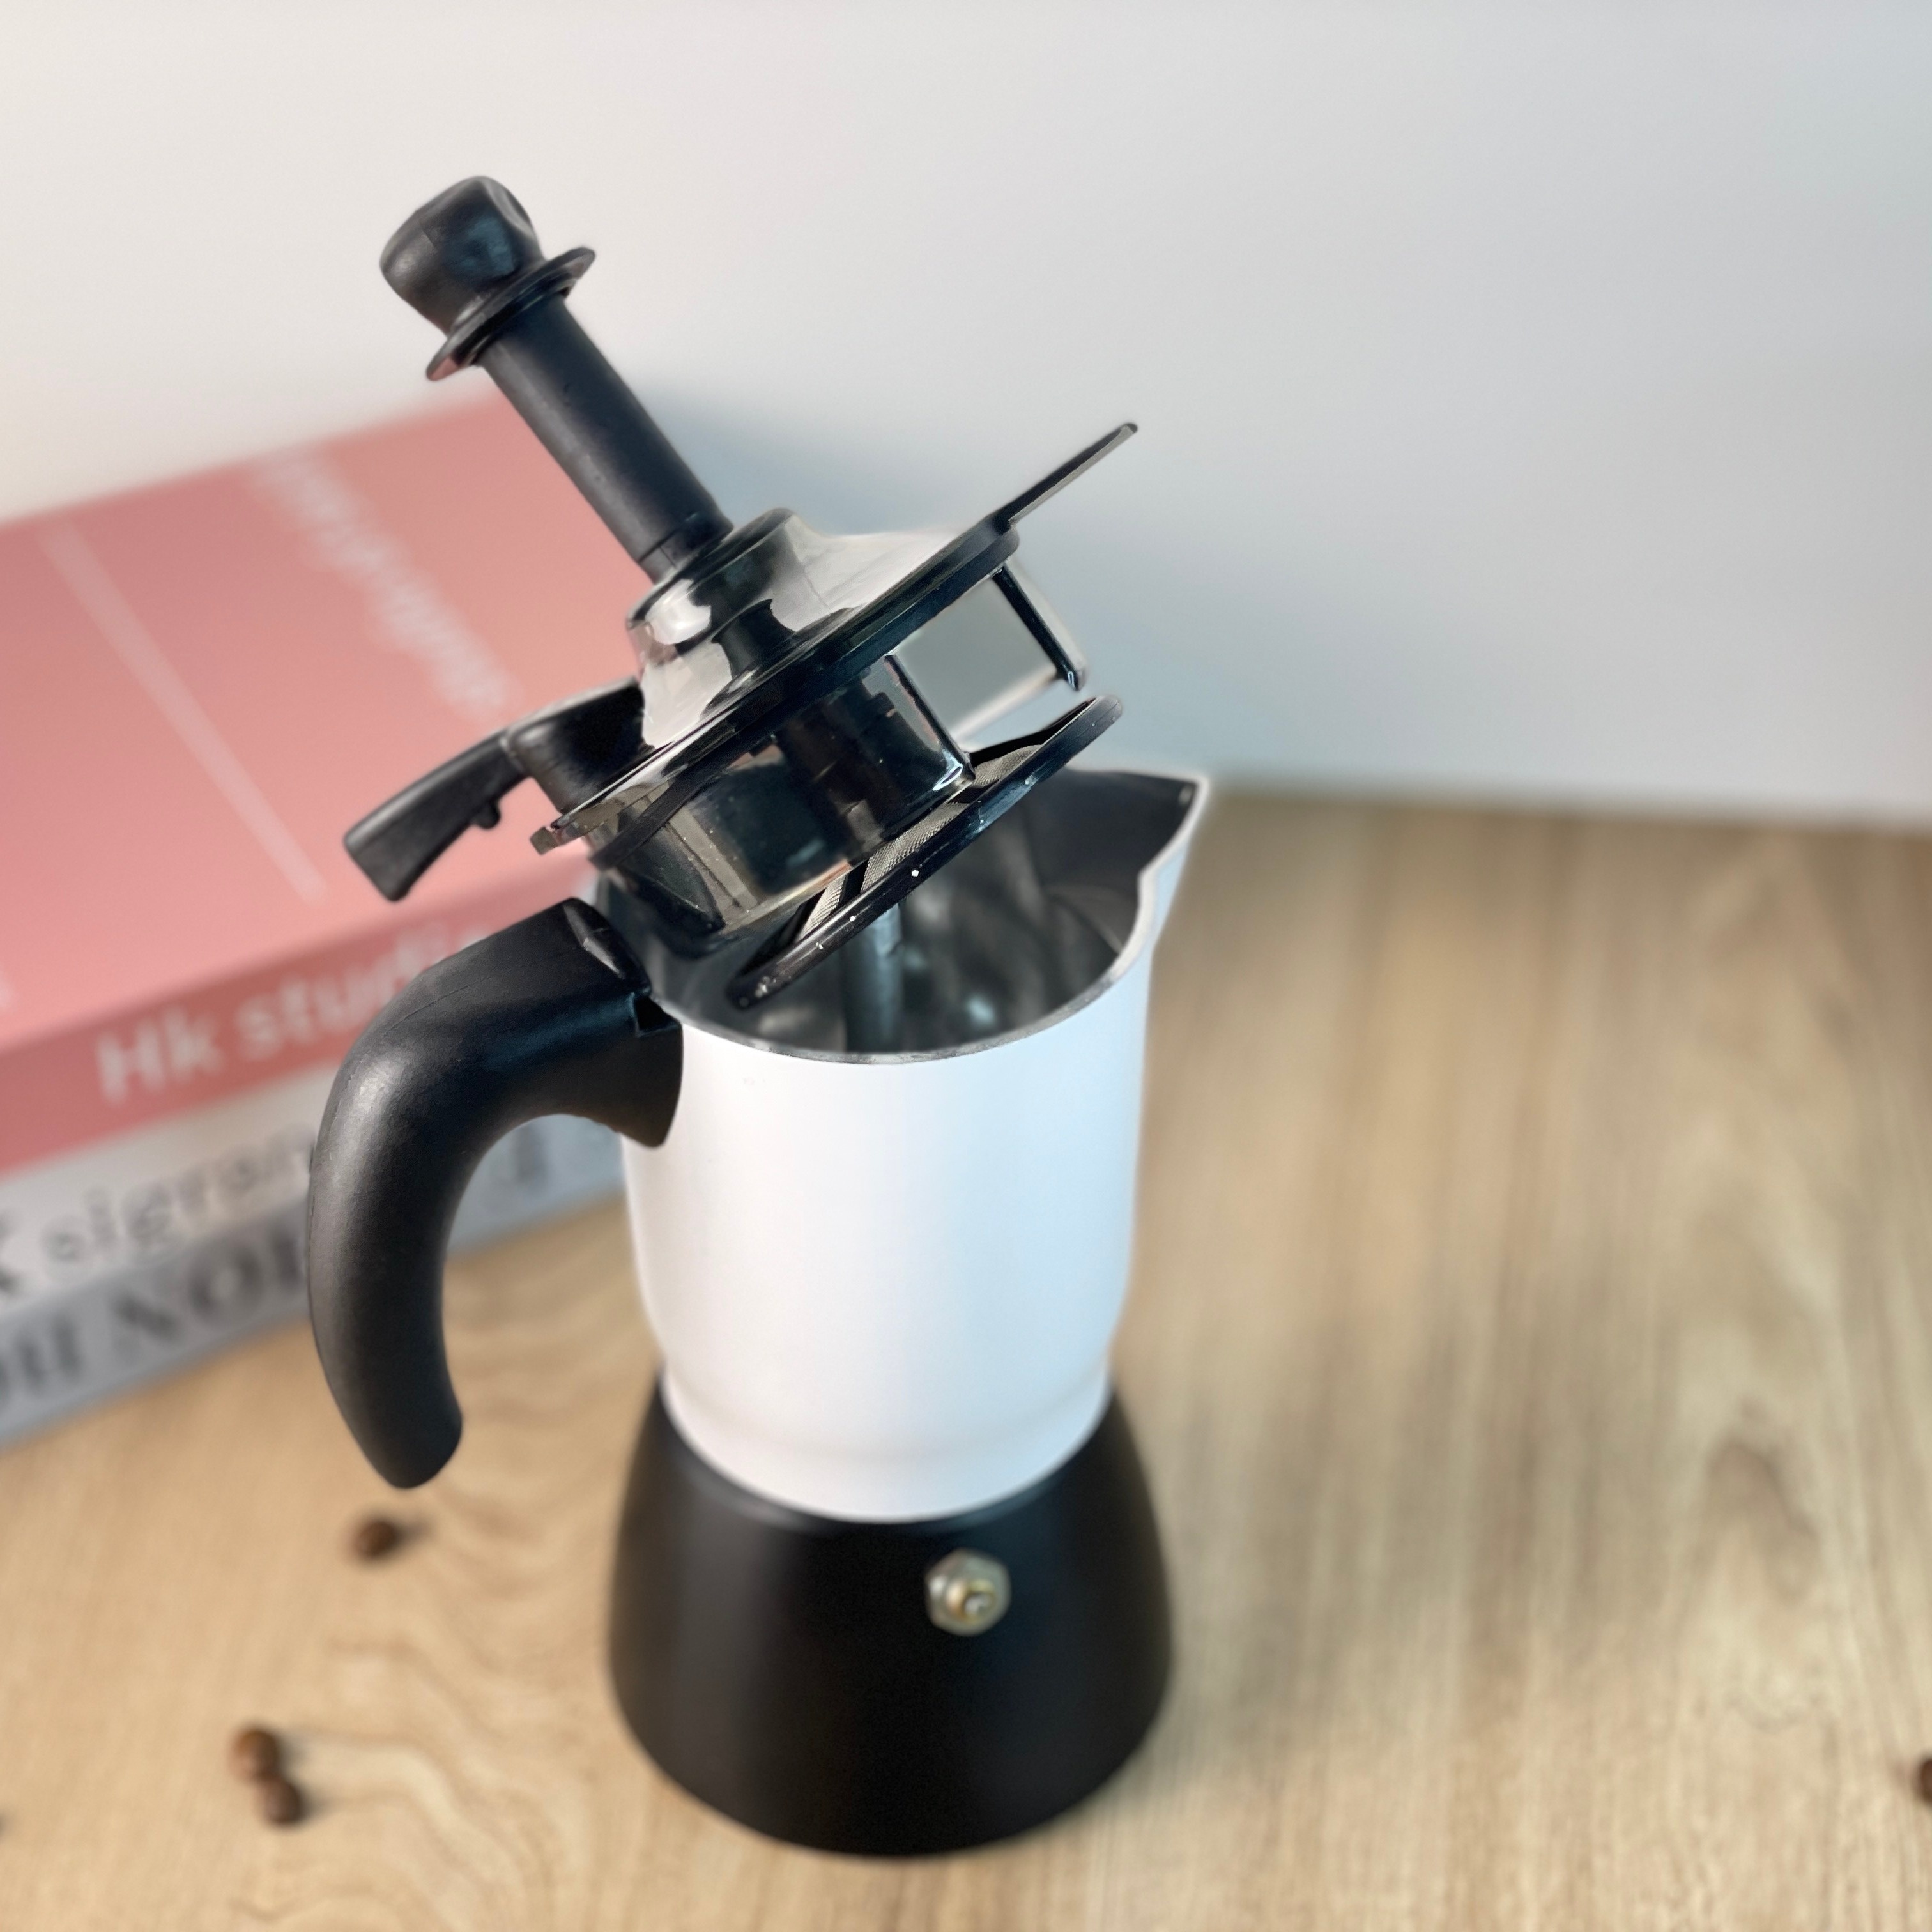 3/6 Cups Coffee Maker Aluminum Mocha Espresso Percolator Pot Coffee Maker  Moka Pot Stovetop Coffee Maker Coffeeware